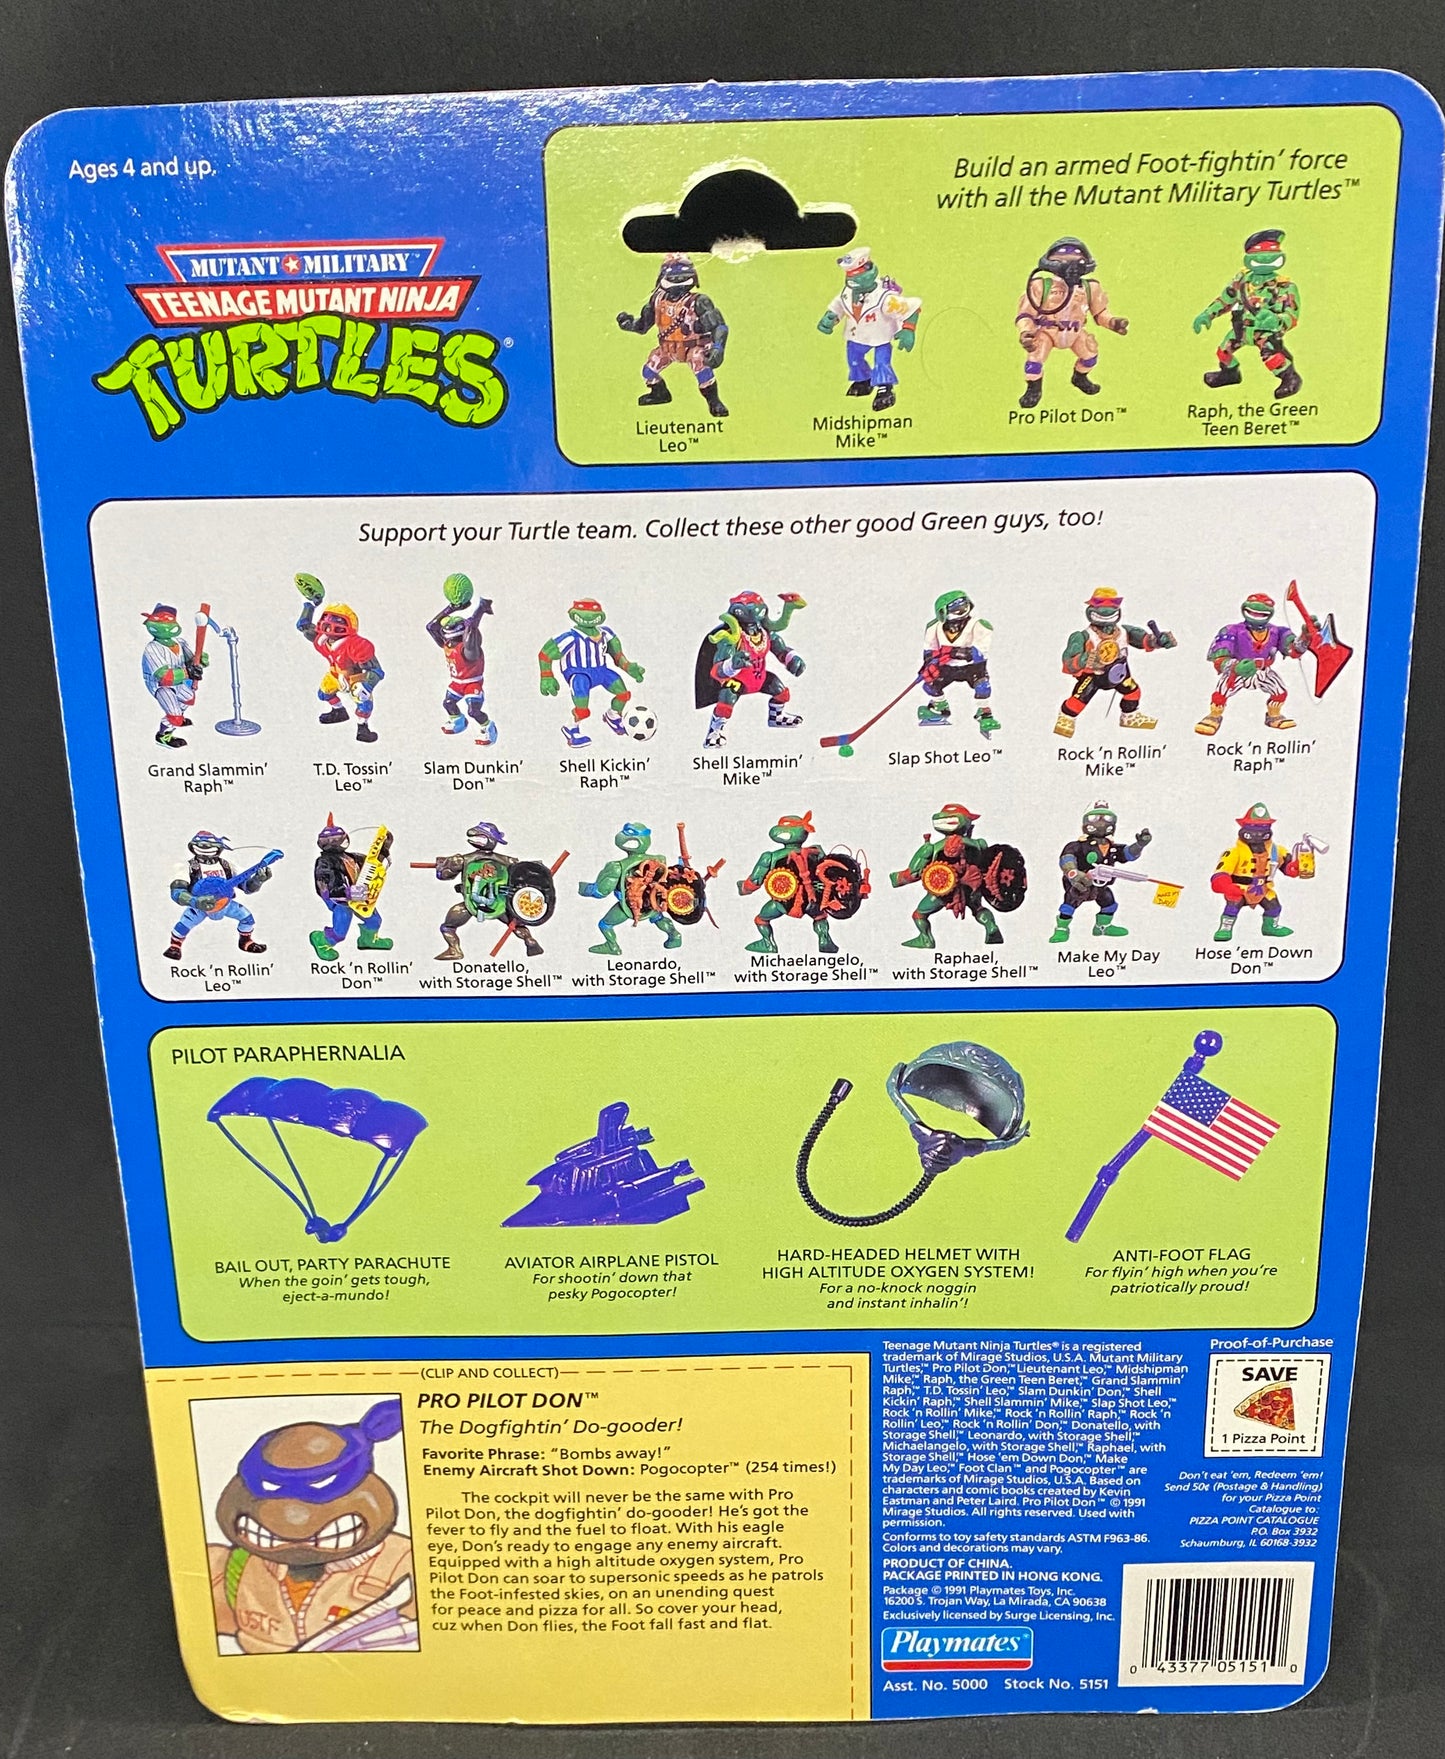 Playmates Teenage Mutant Ninja Turtles Pro Pilot Don